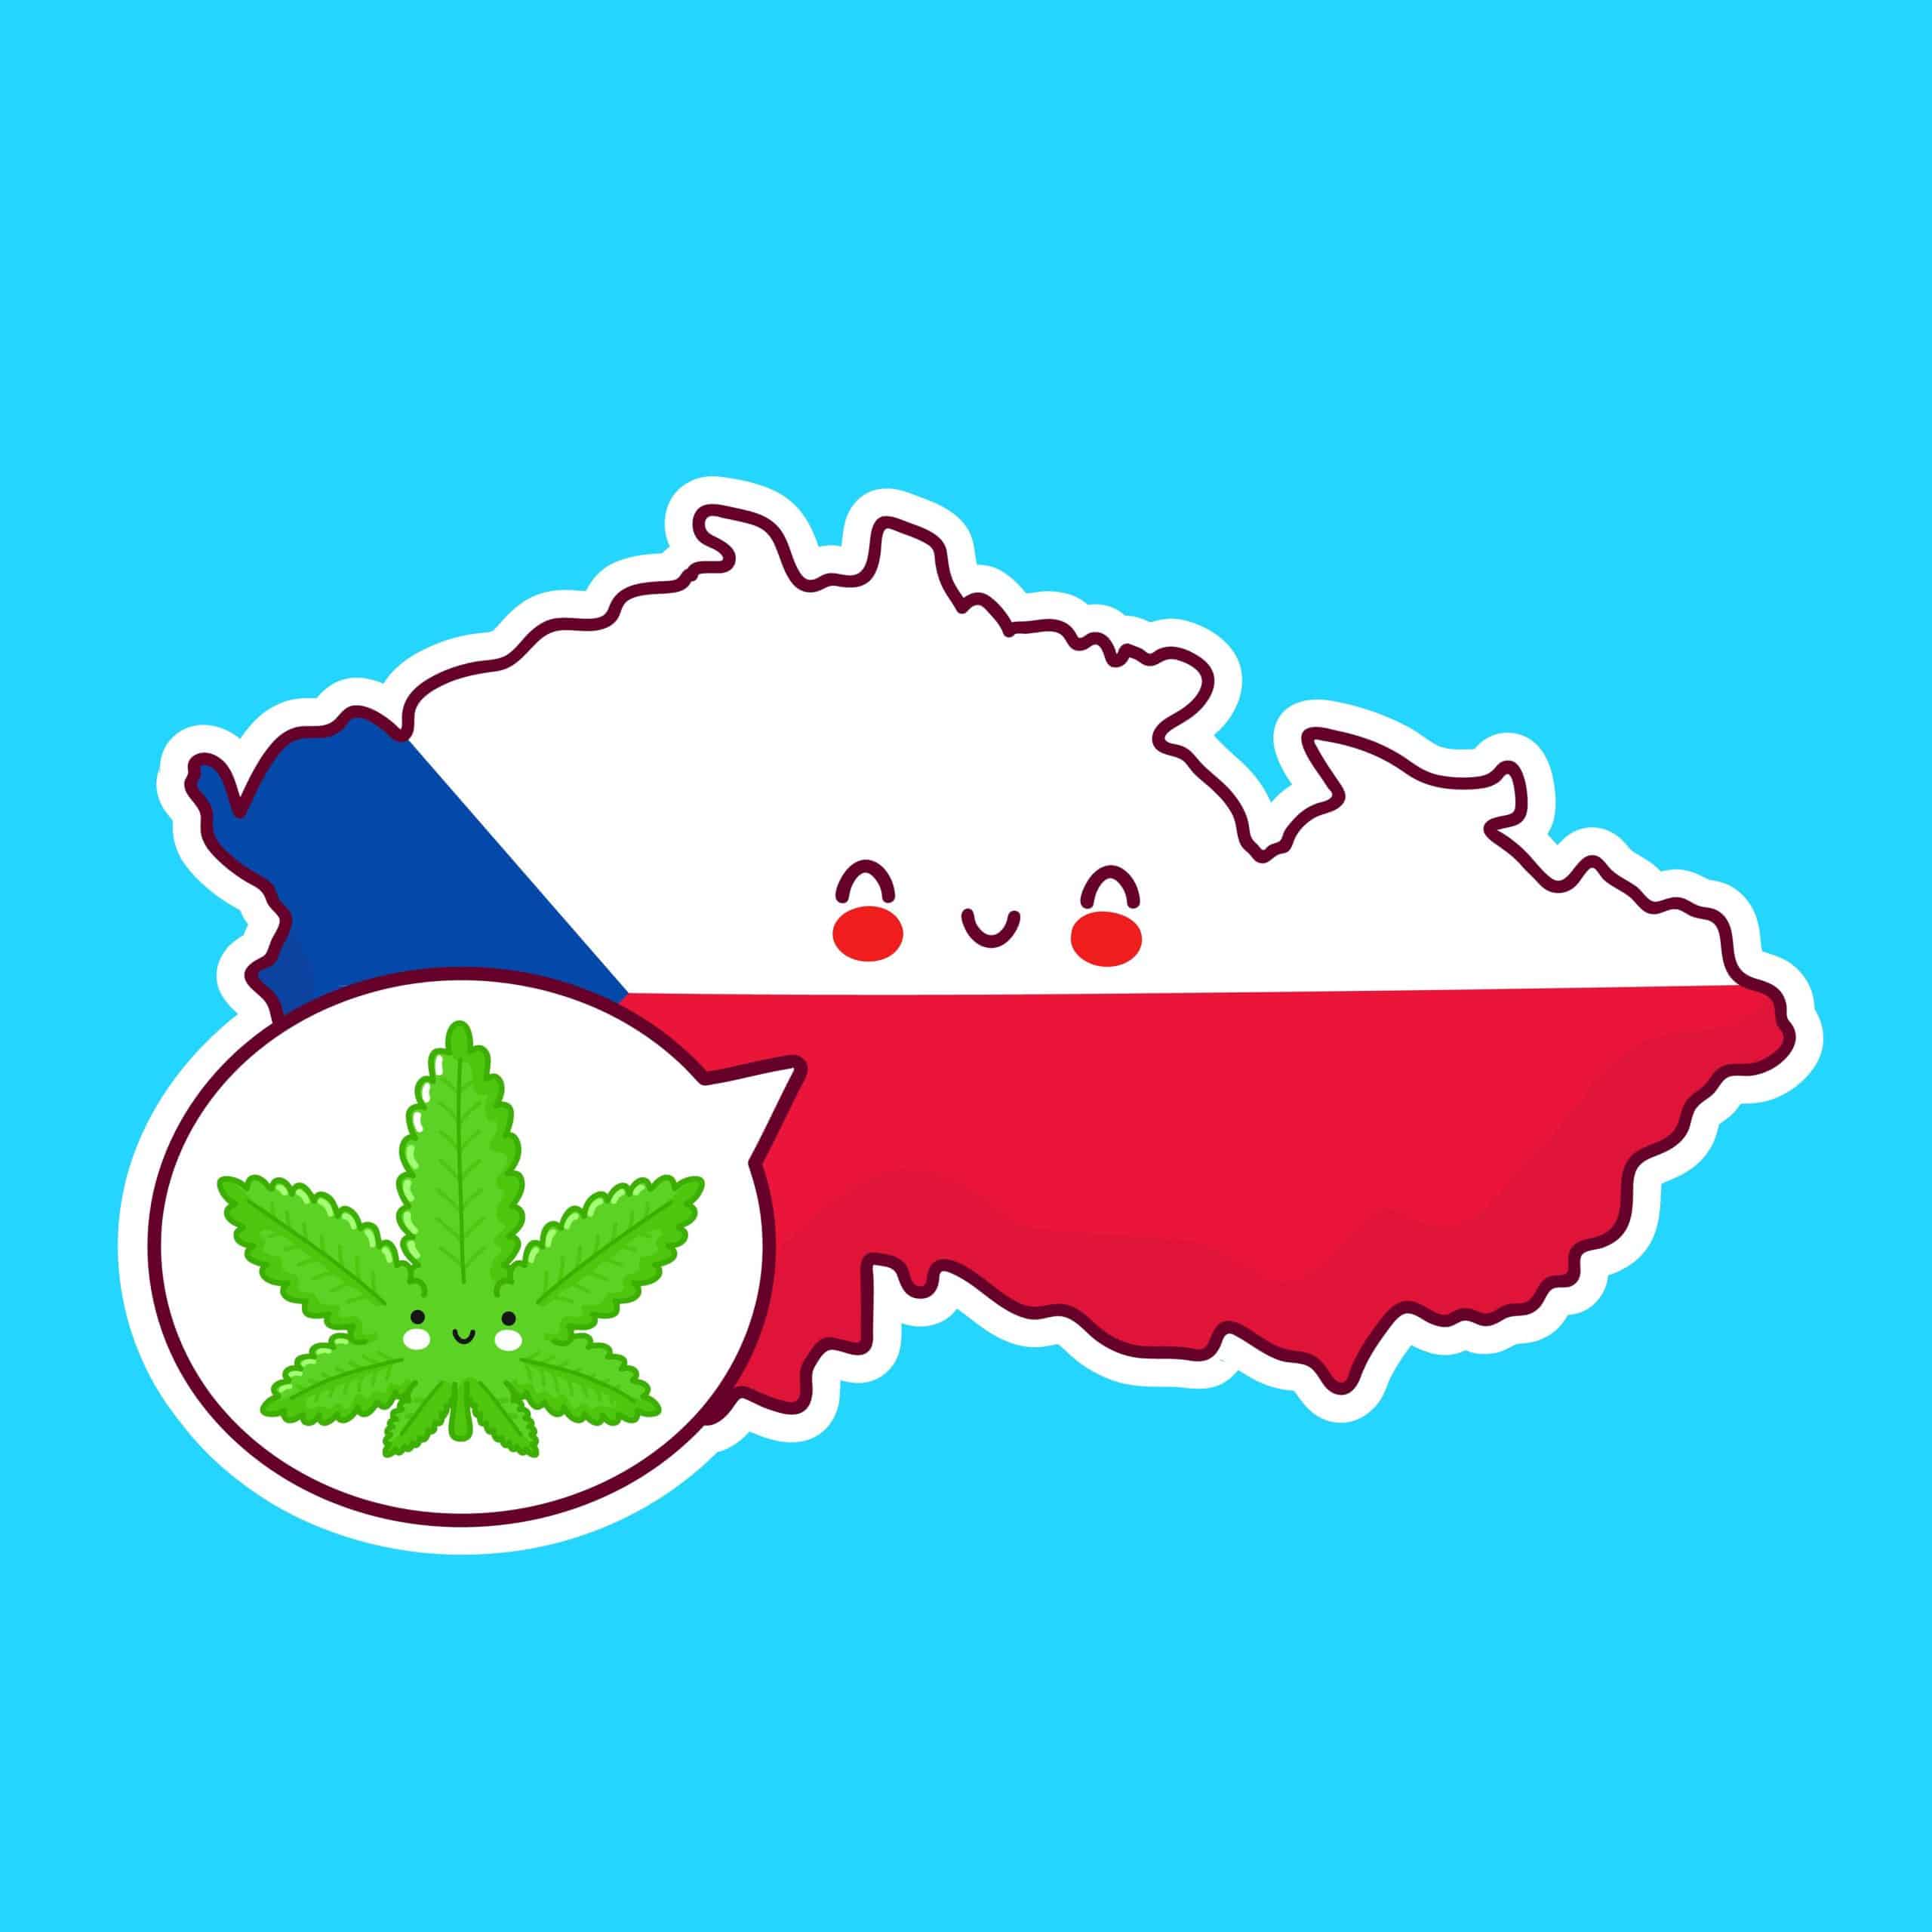 Czech Republic Now Moving Towards Legalization